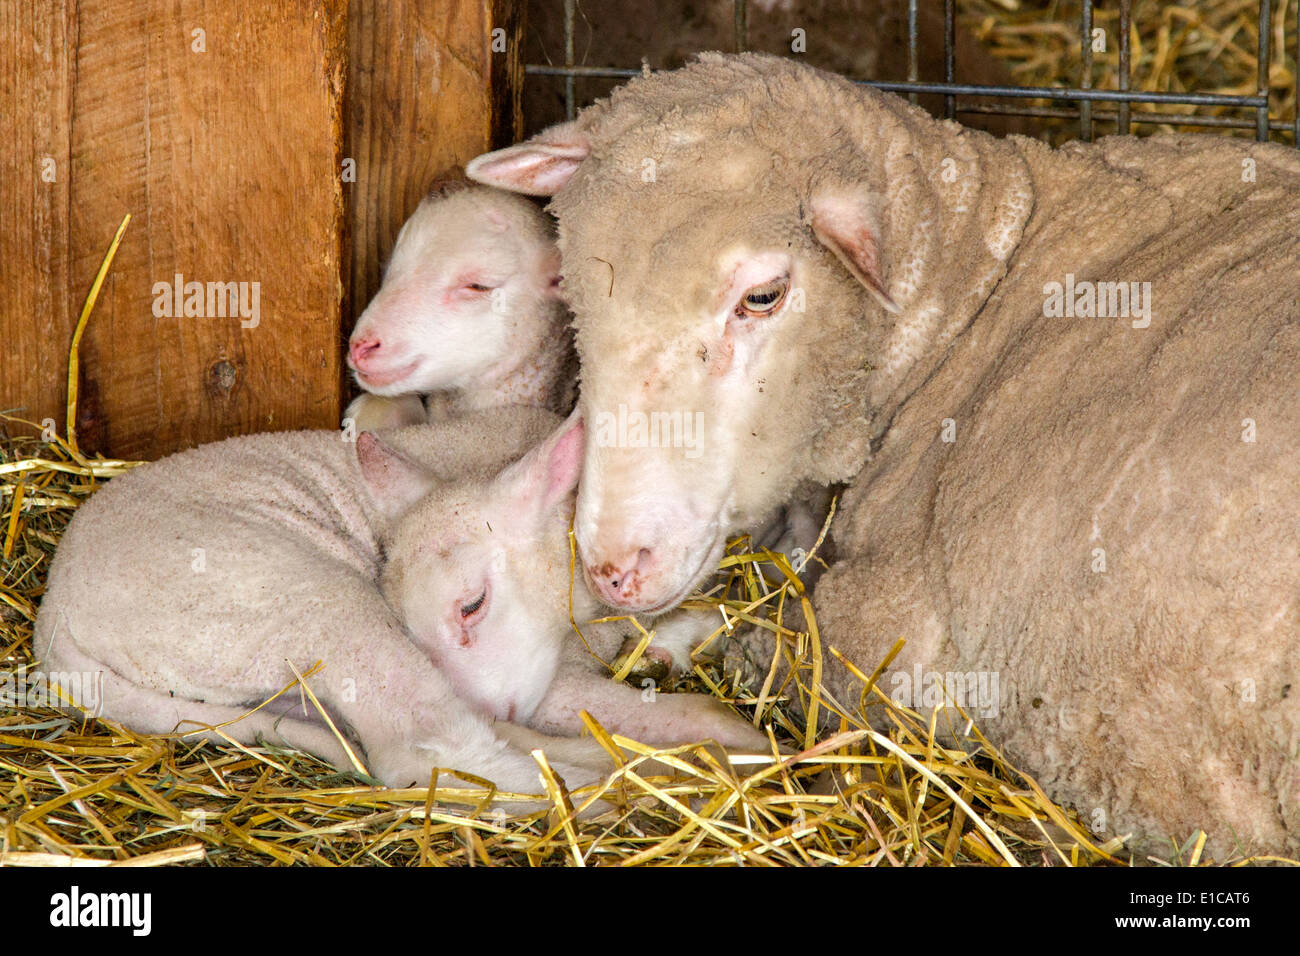 Ewe laying beside her two baby lambs Stock Photo